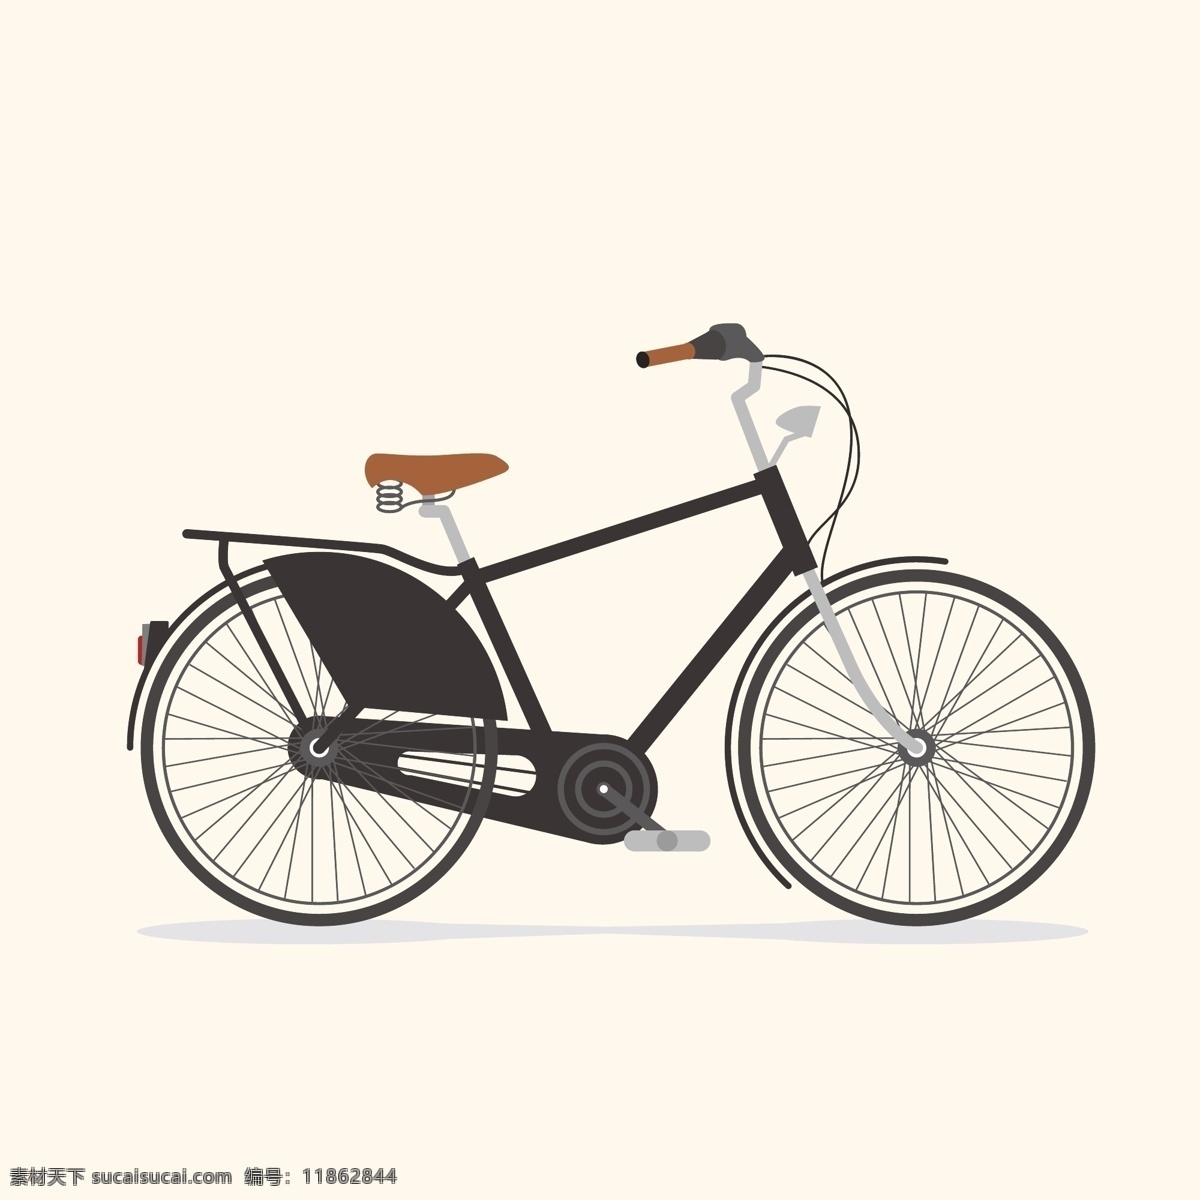 老式自行车 自行车手绘 自行车 车 复古自行车 黑色自行车 插画自行车 插画 动漫动画